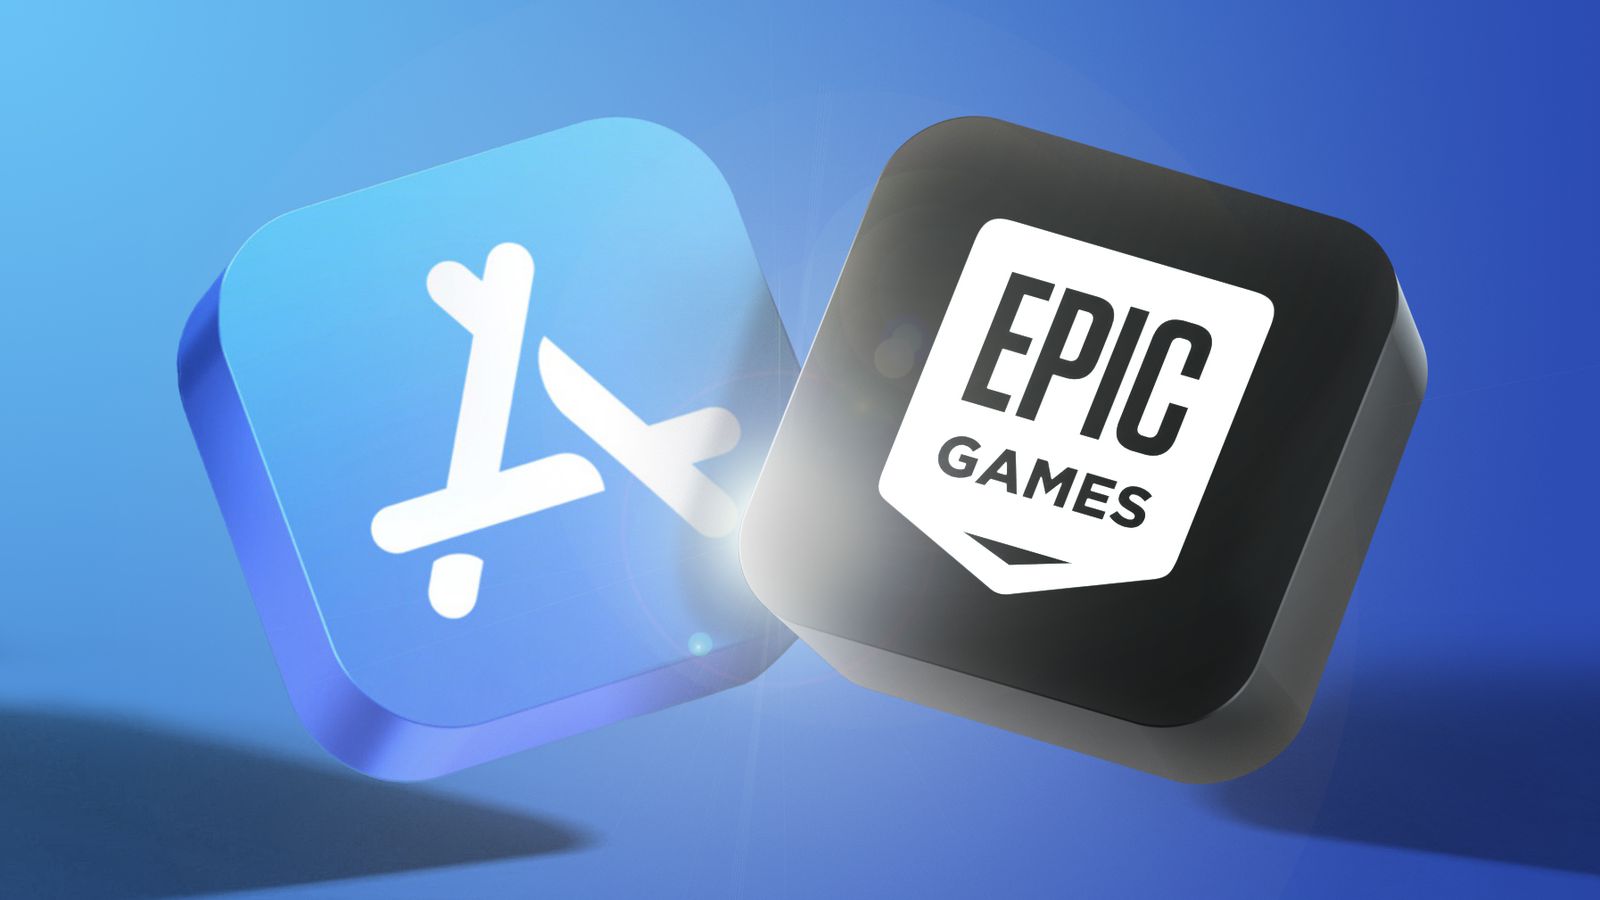 Google, Google Play Store sözleşmesini ihlal ettiği için Epic Games'e dava açtı